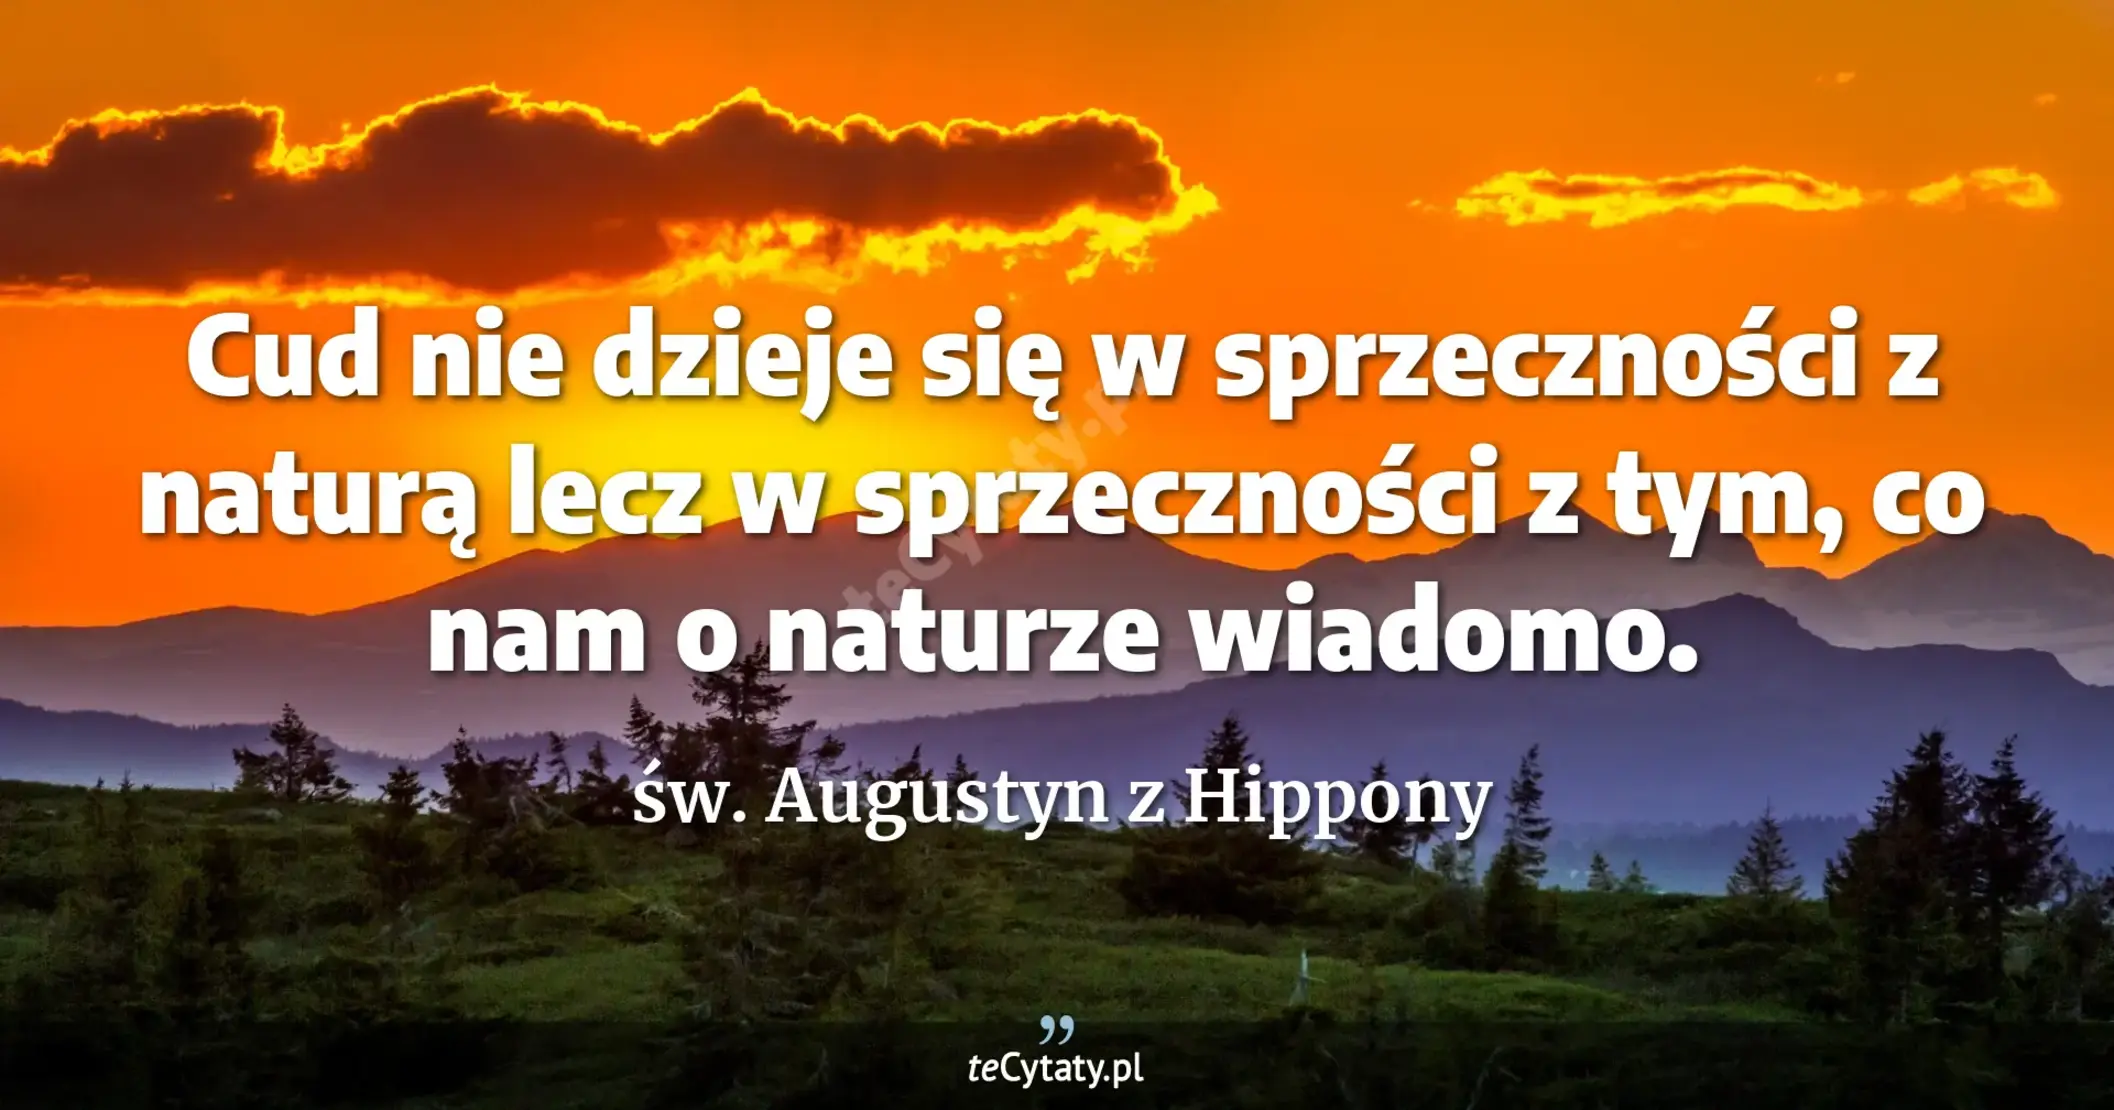 Cud nie dzieje się w sprzeczności z naturą lecz w sprzeczności z tym, co nam o naturze wiadomo. - św. Augustyn z Hippony